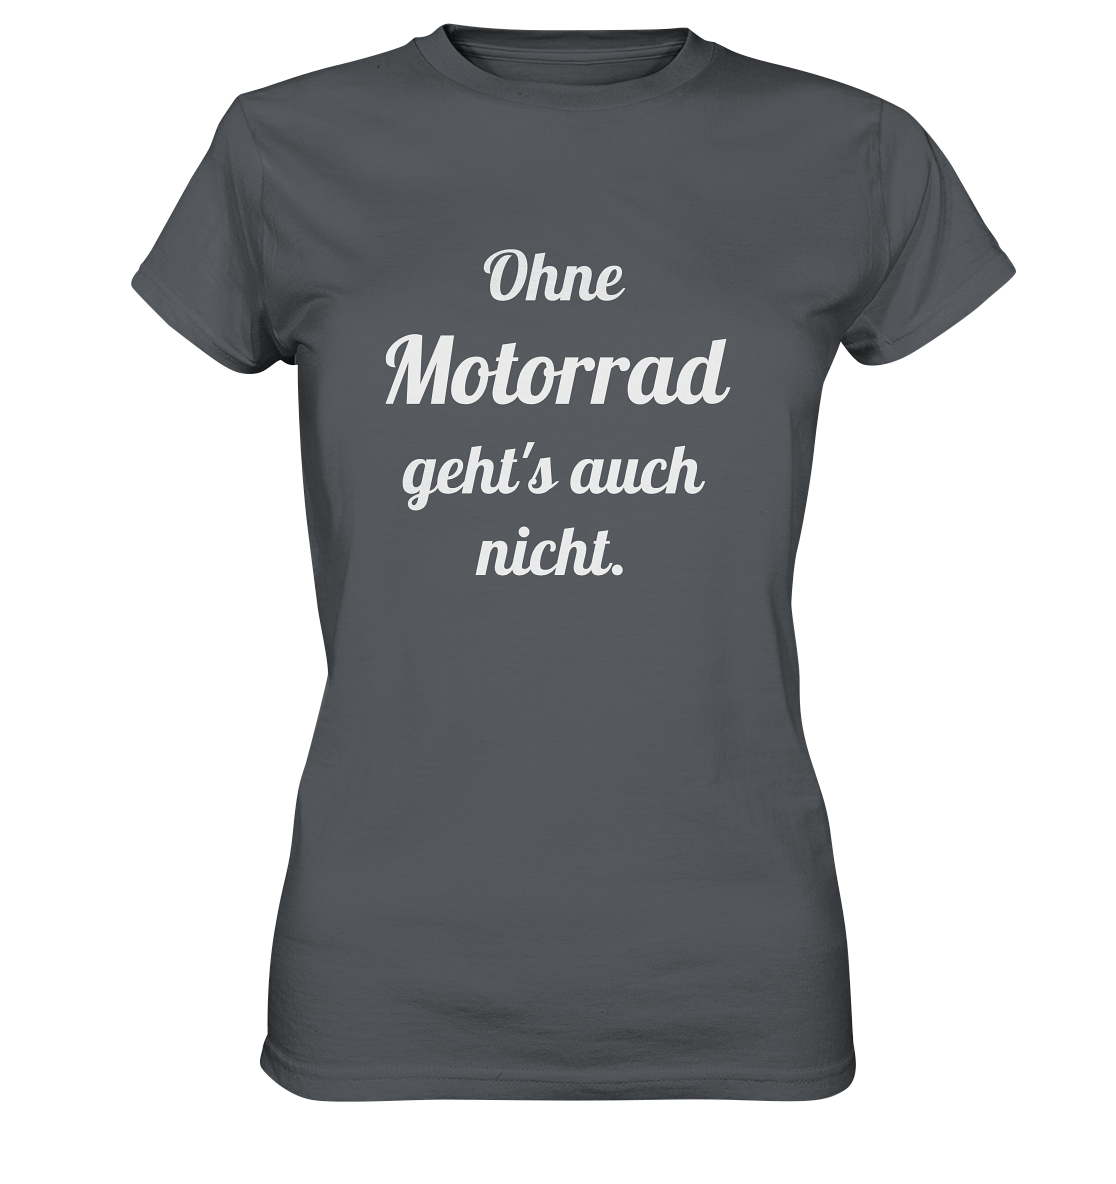 Damen-T-Shirt, Rundhals mit Aufdruck "Ohne Motorrad geht's auch nicht", grau